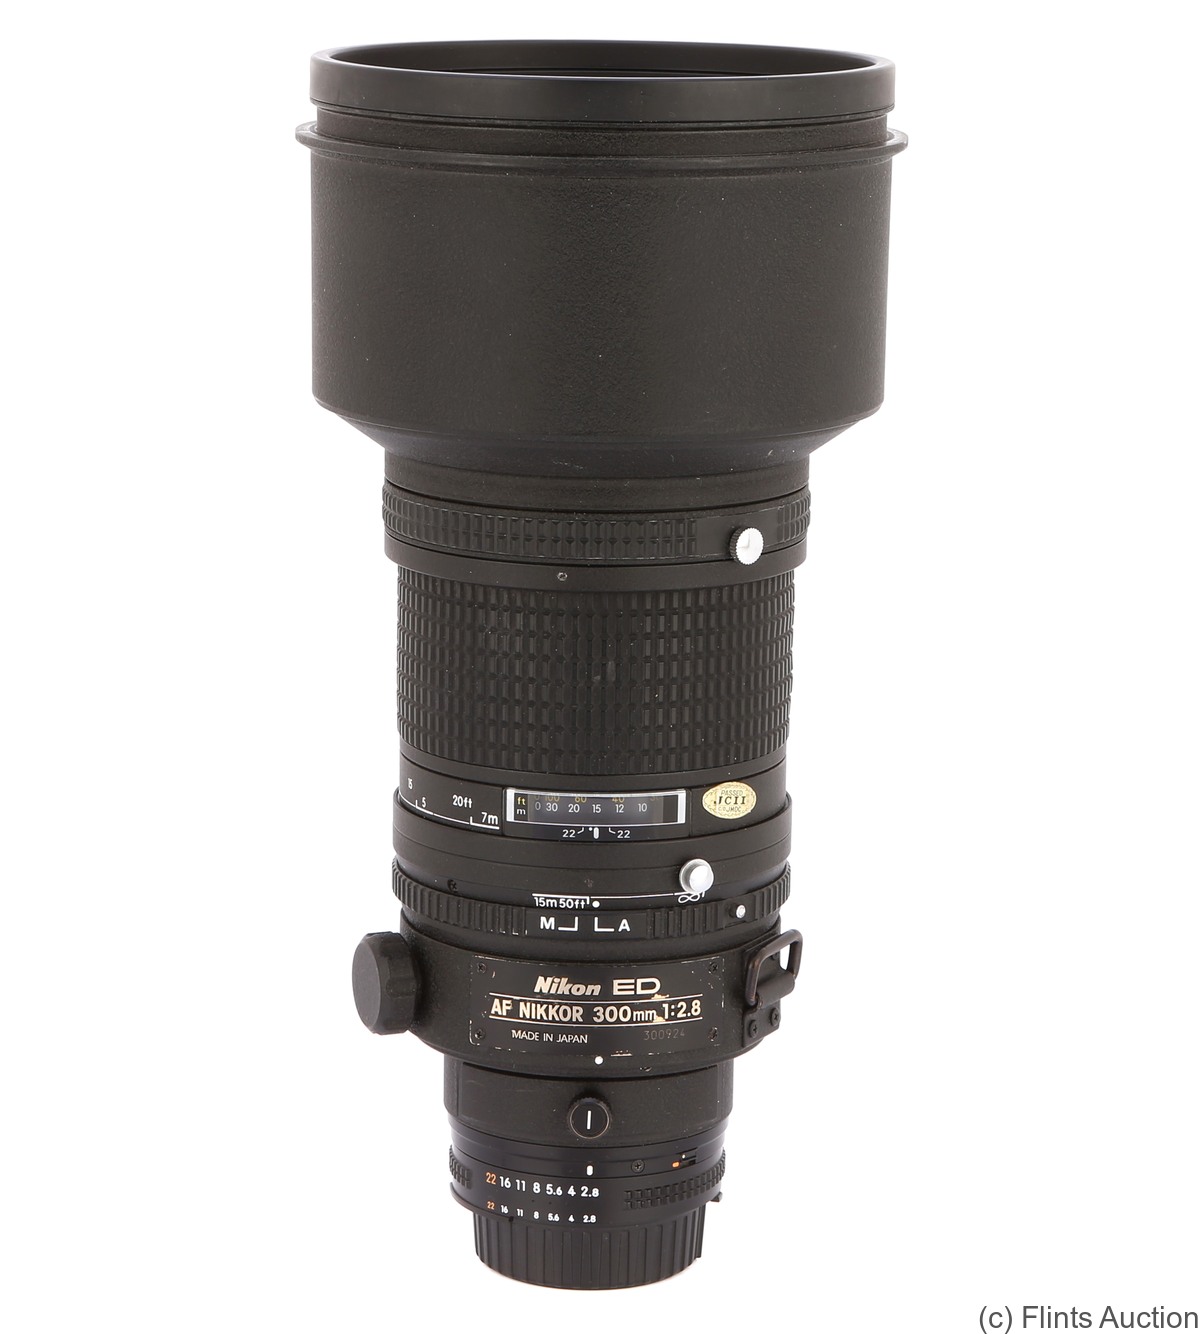 Nikon: 300mm (30cm) f2.8 Nikkor ED AF camera